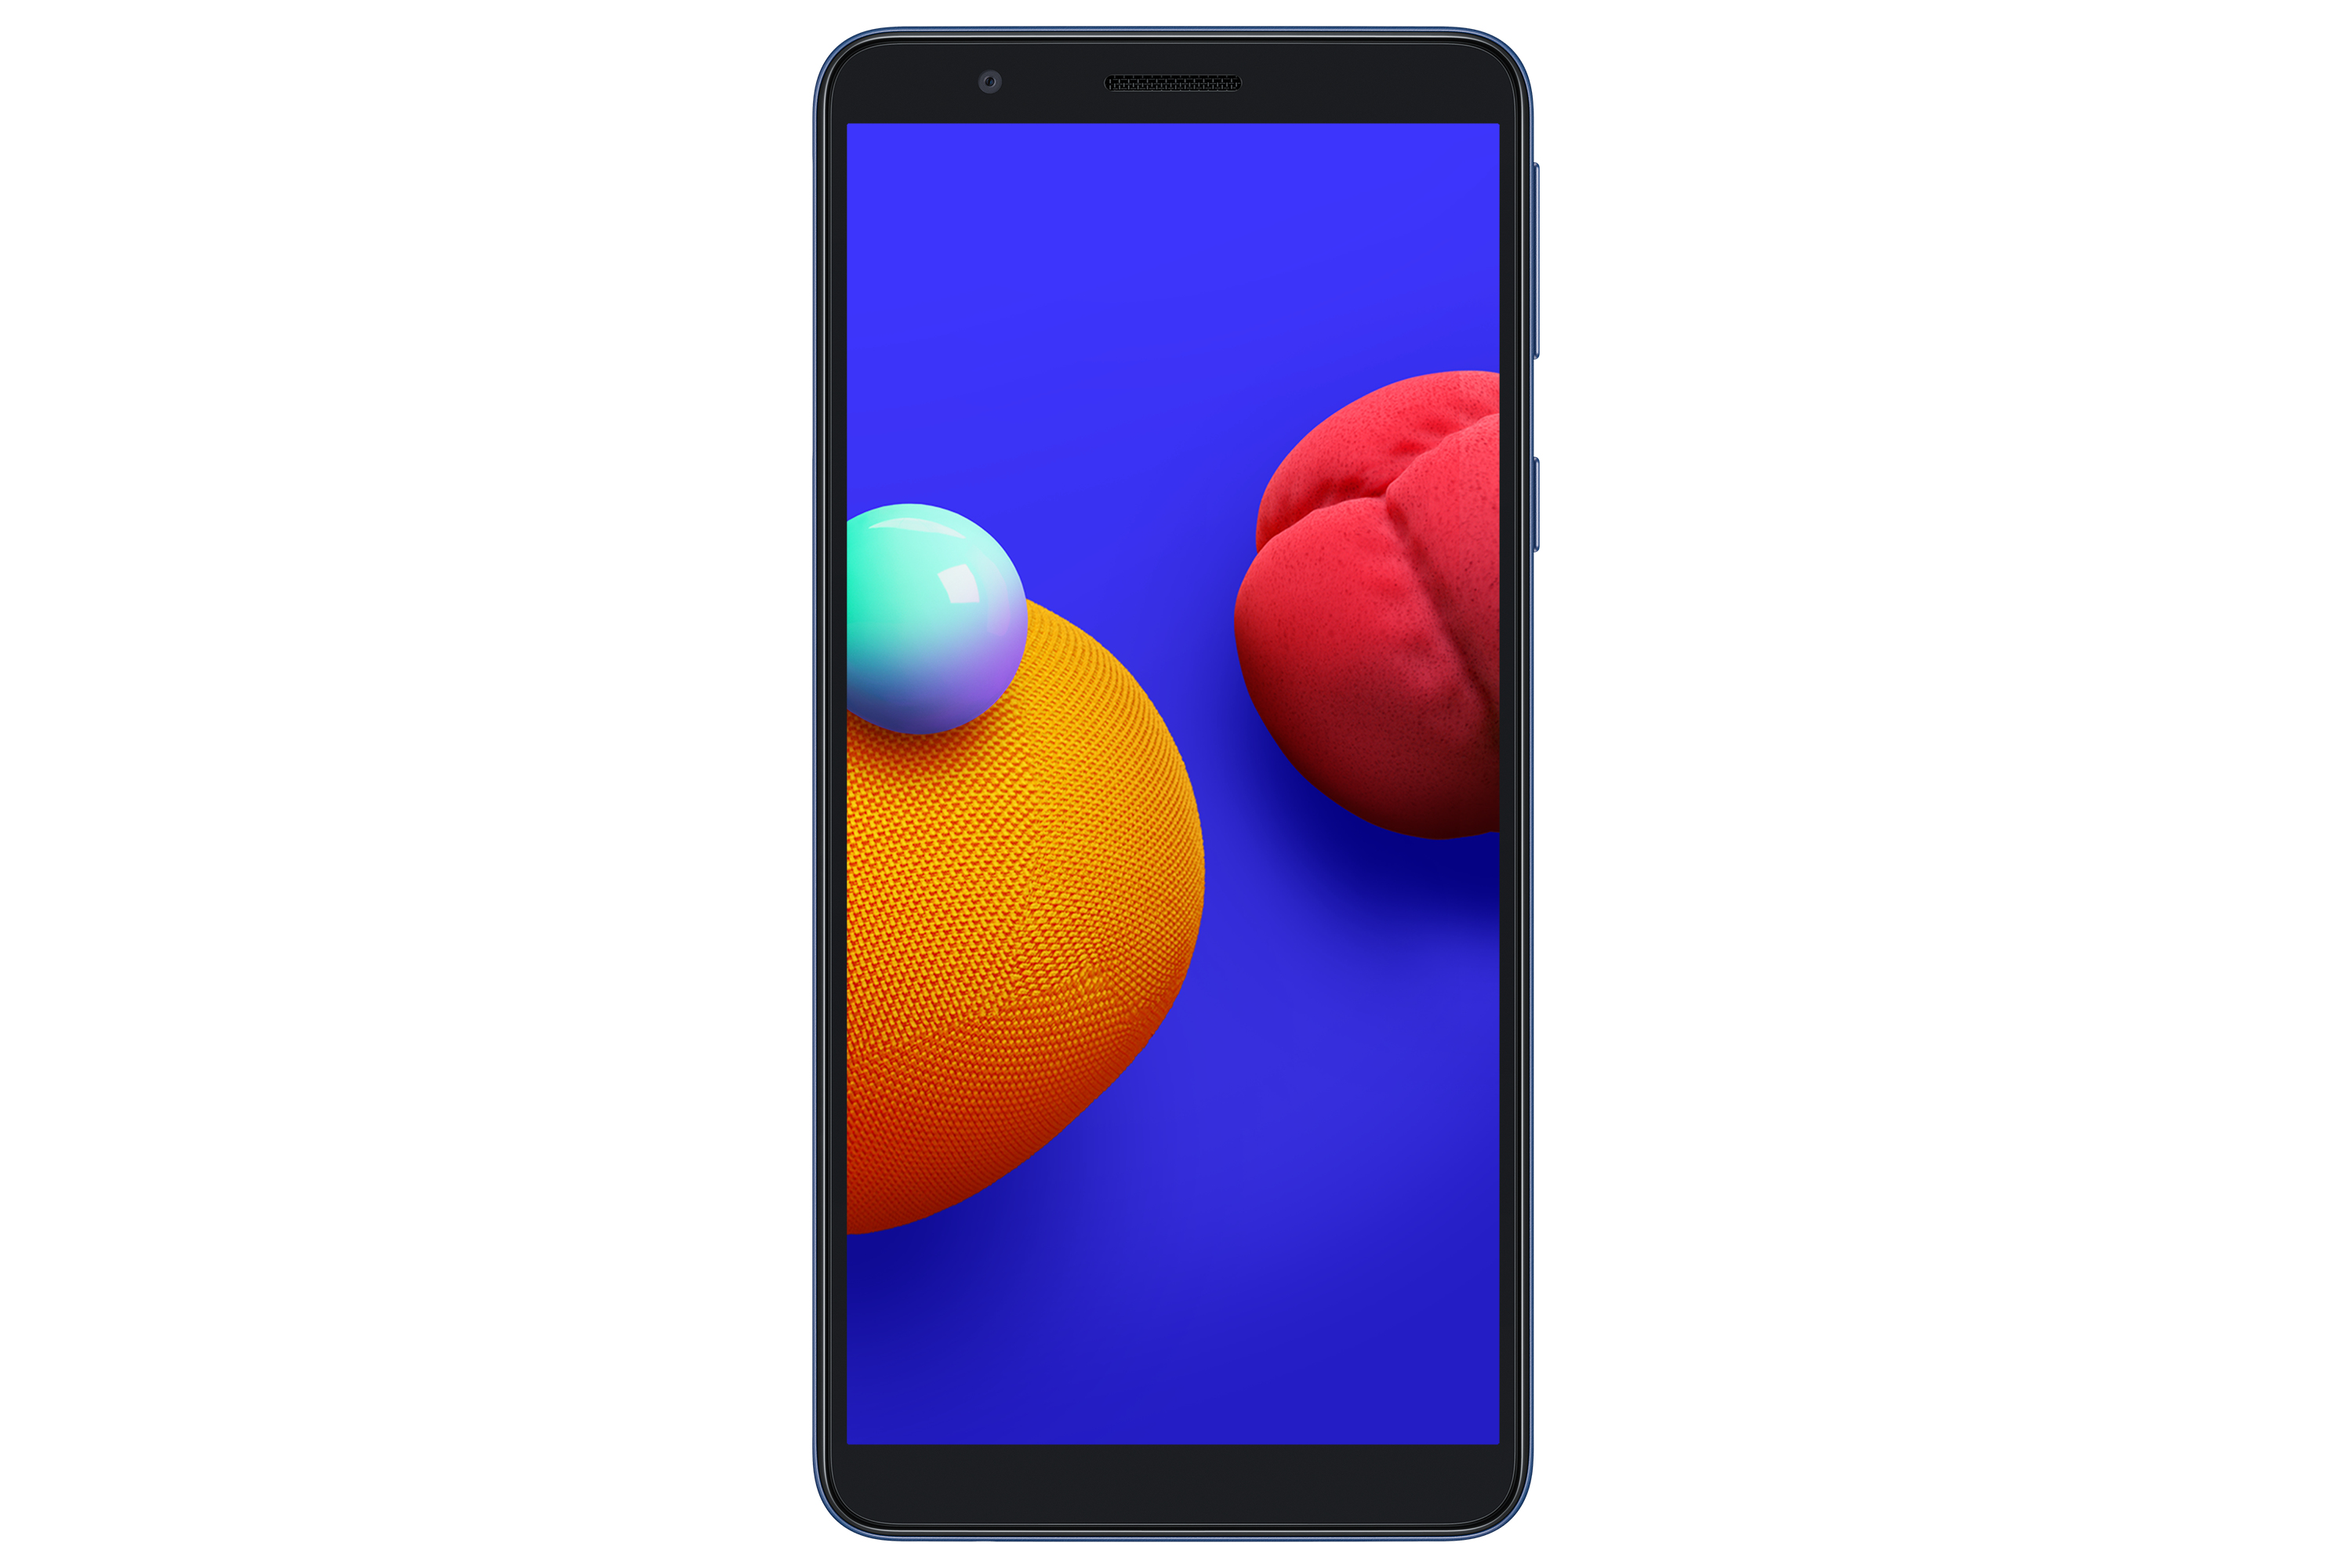 Samsung A013 Smartphone 16GB/1GB 4G Dual Sim Blue